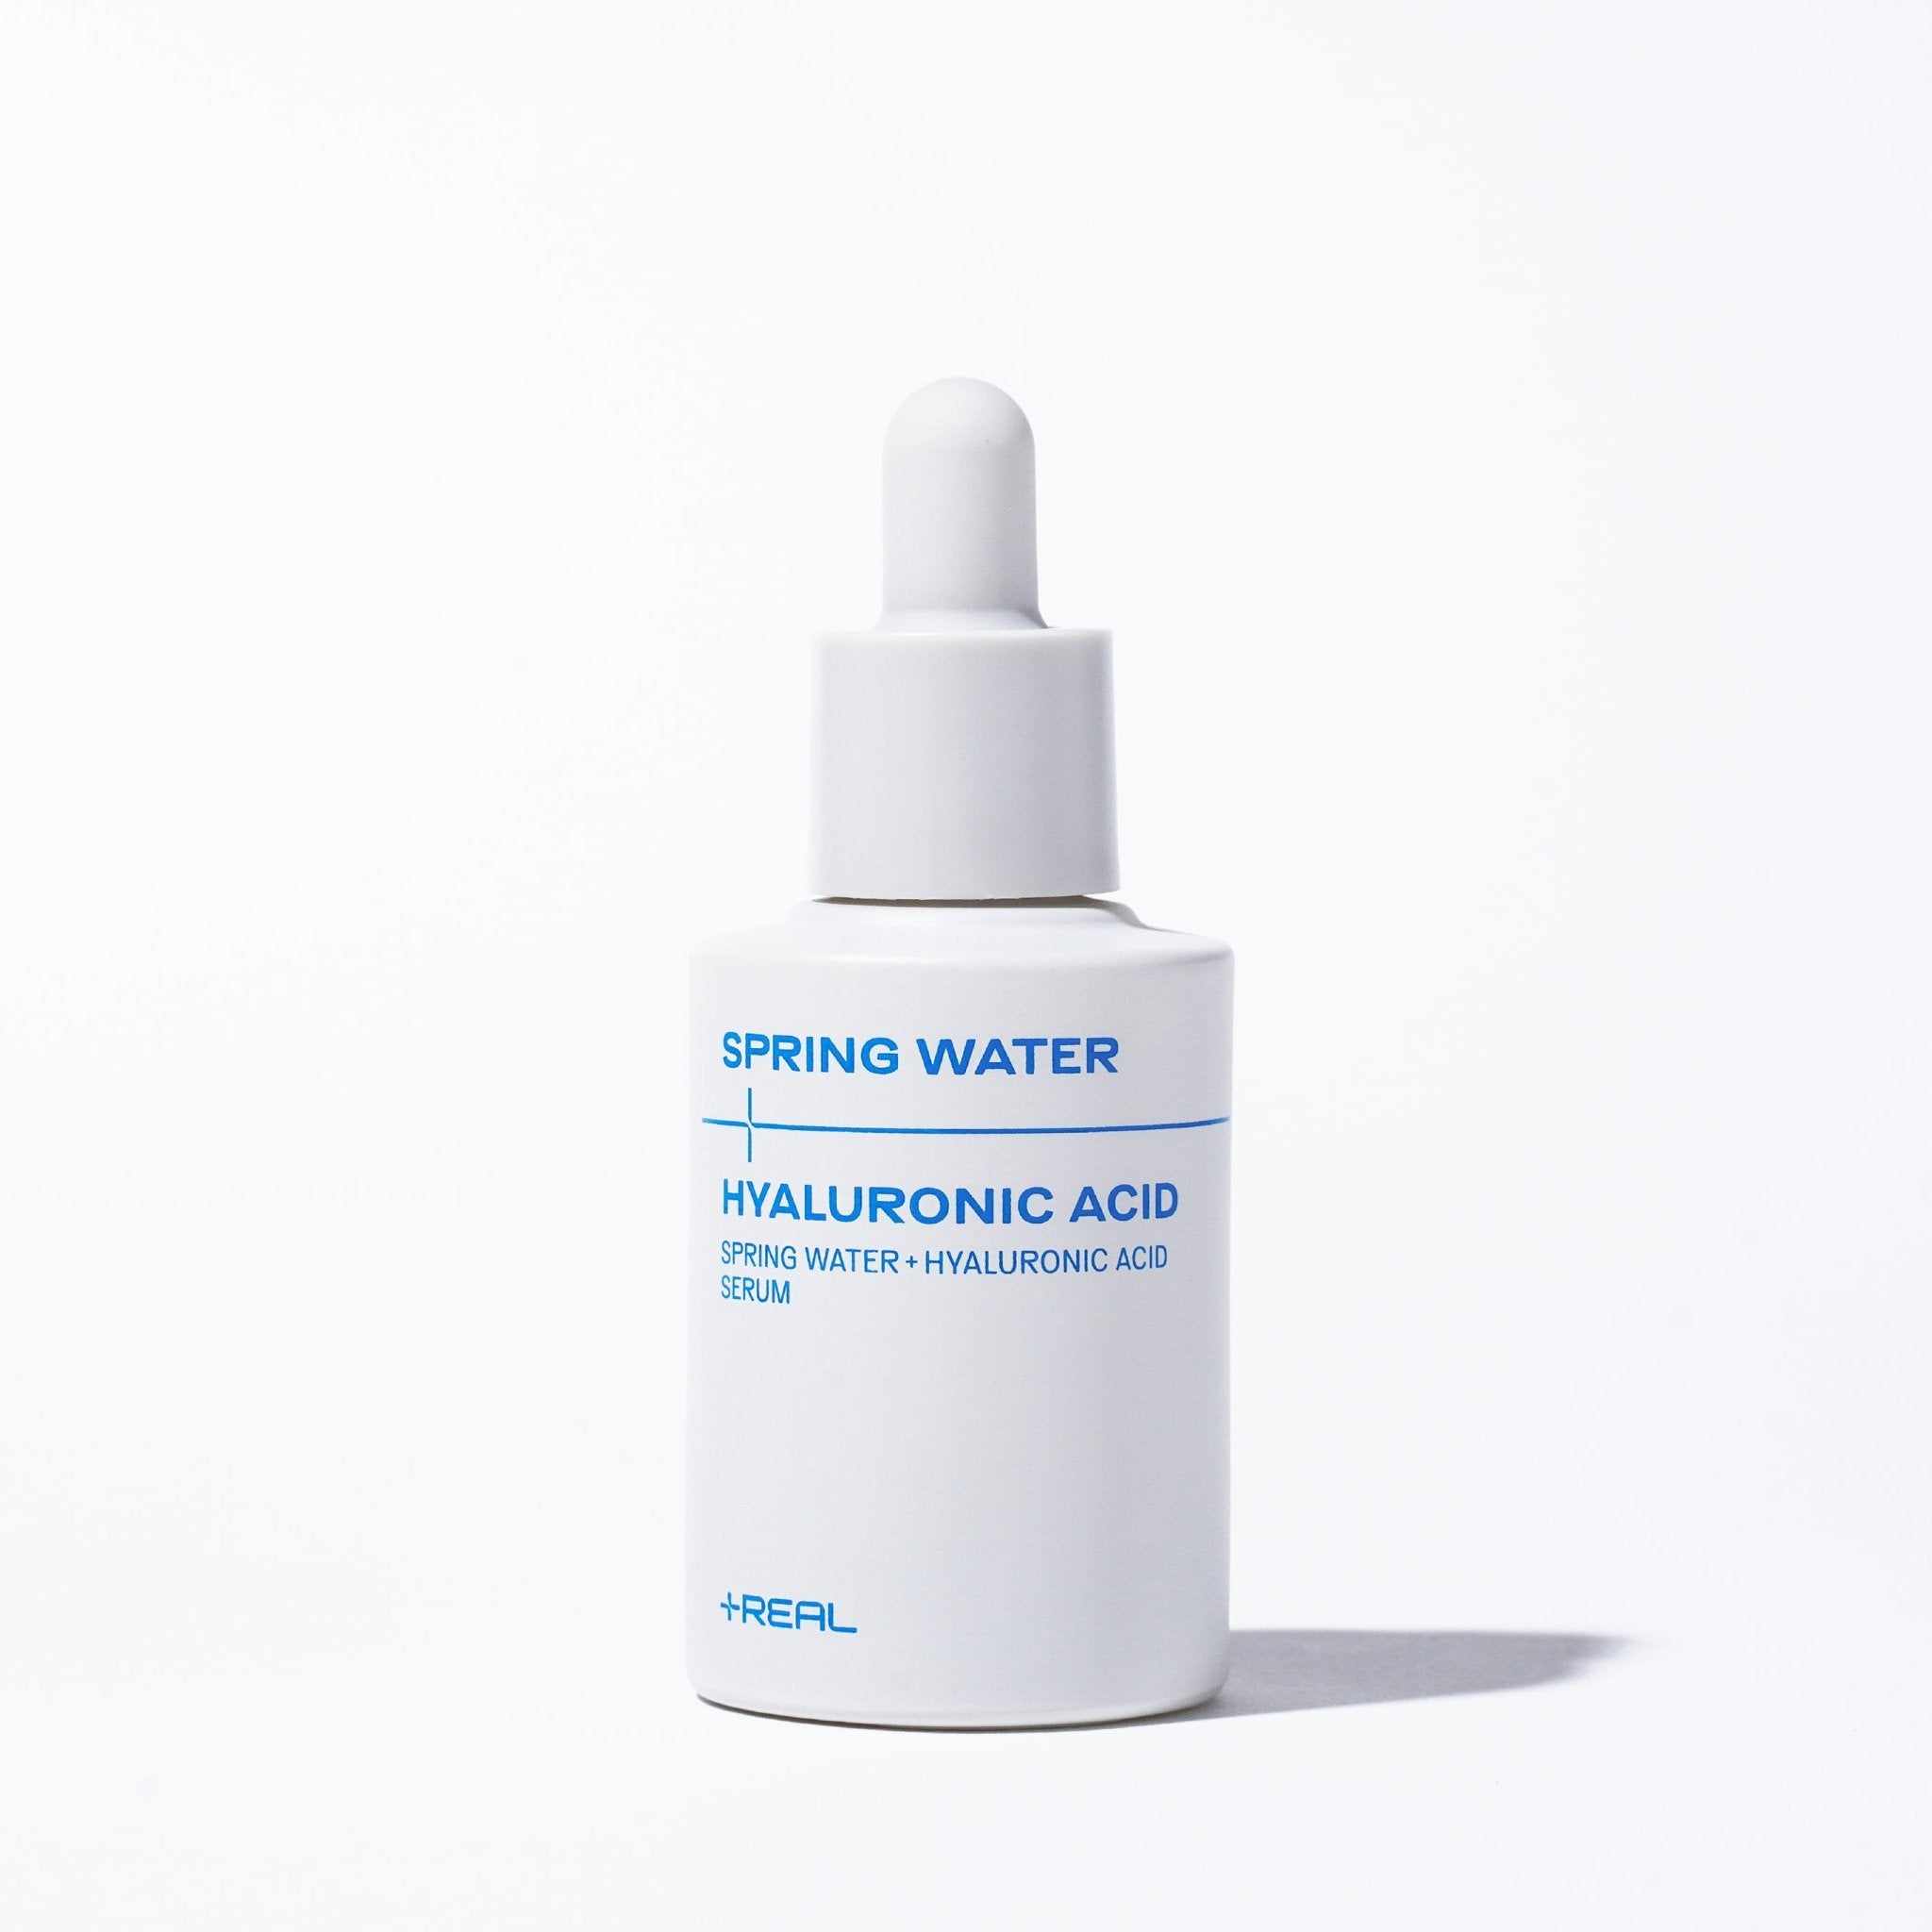 Springwater+Hyaluronic Acid Line Set - PLUSREAL